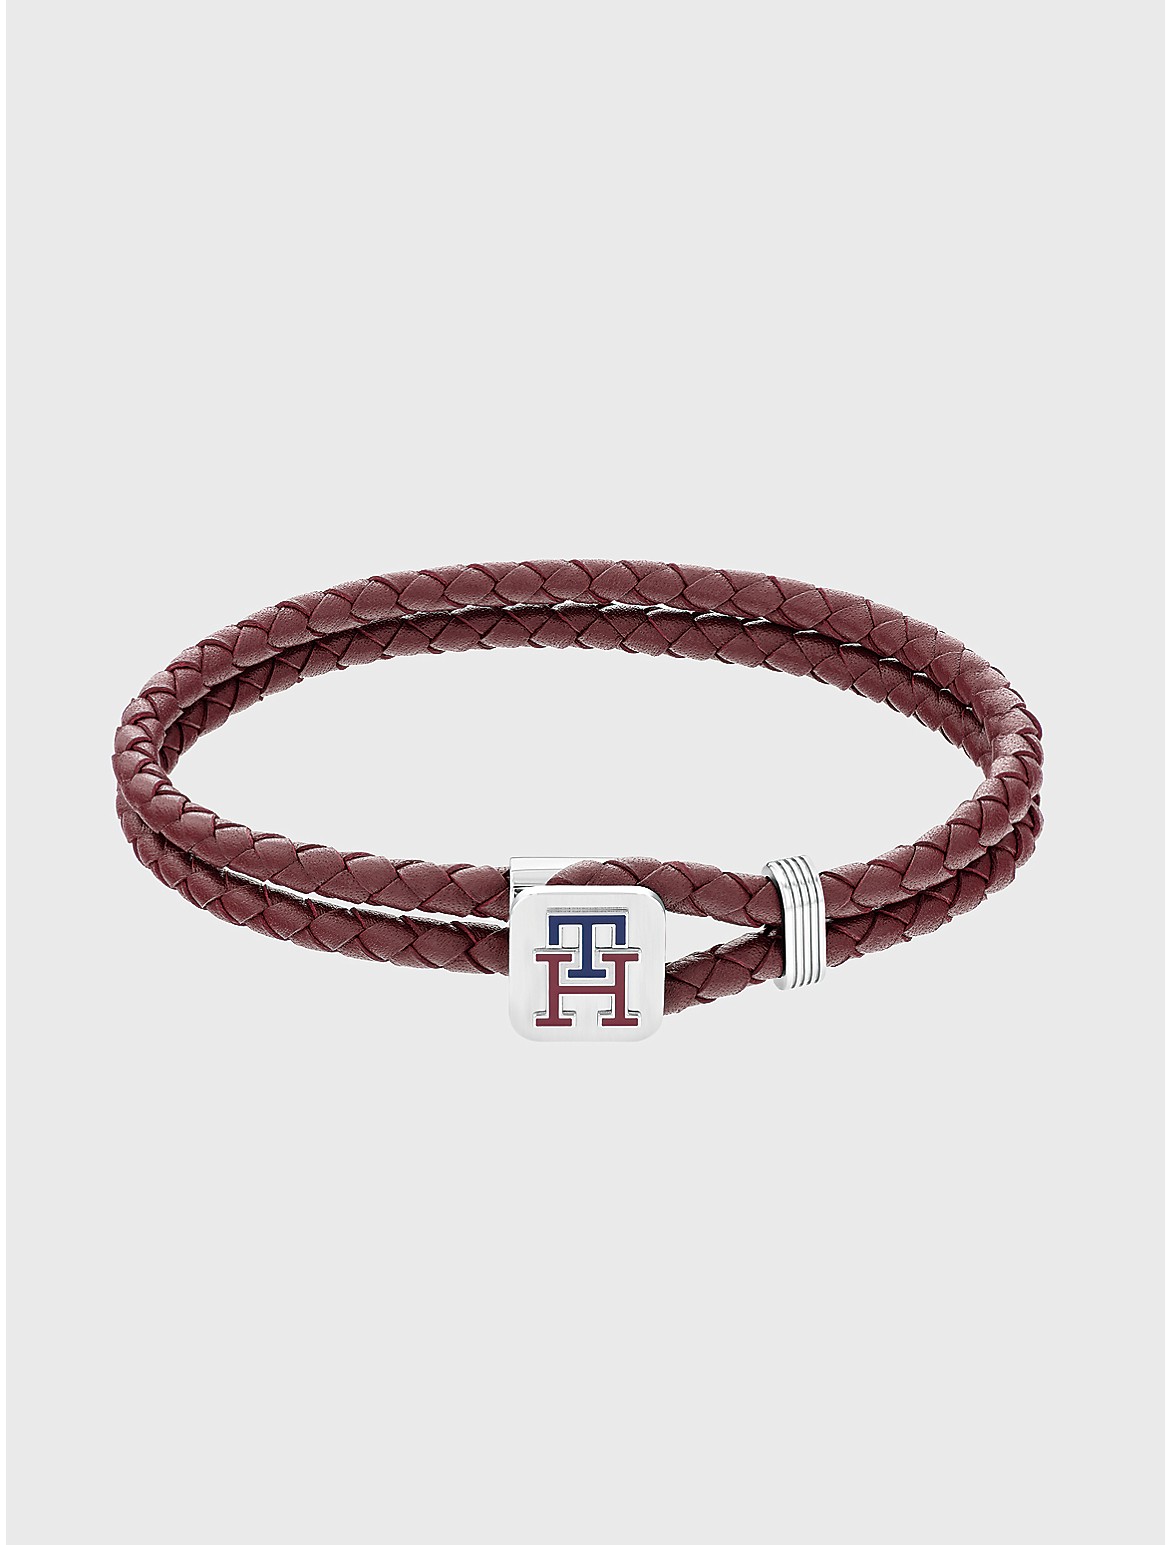 Tommy Hilfiger Men's TH Logo Burgundy Leather Bracelet - Brown